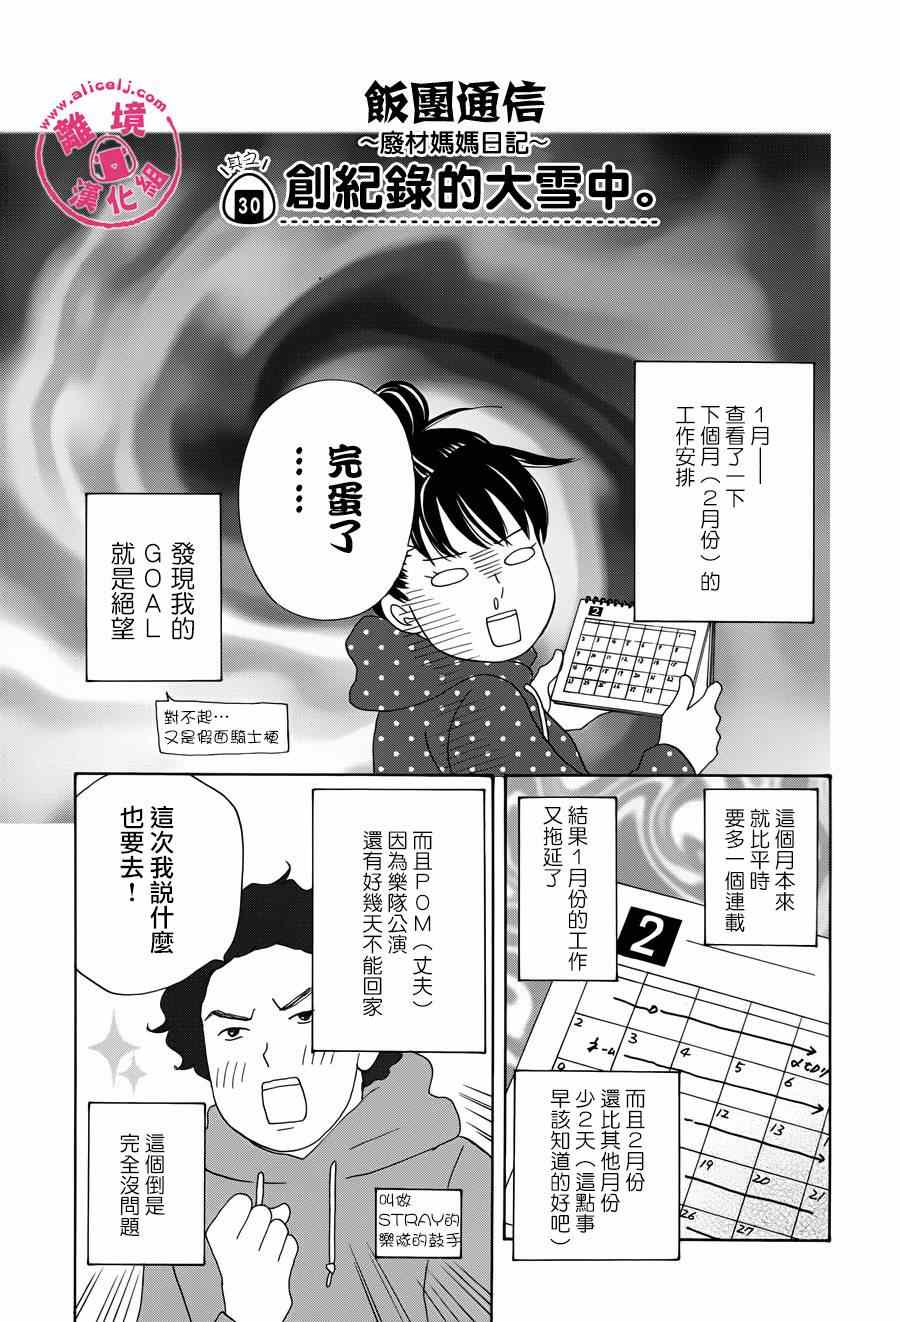 《饭团通信~废柴妈妈日记~》漫画 废柴妈妈日记 028-31话